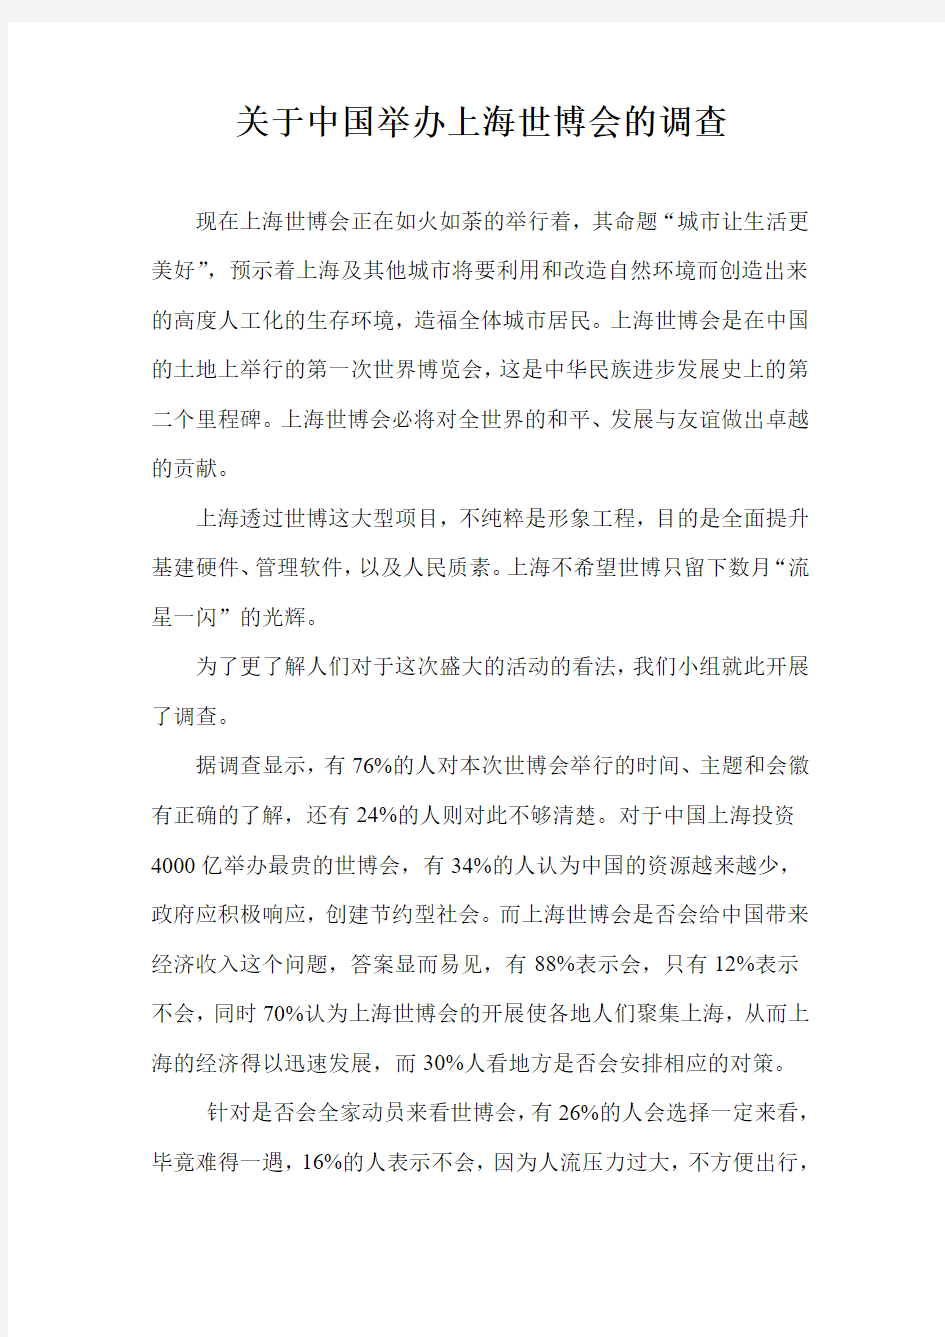 关于中国举办上海世博会的调查报告